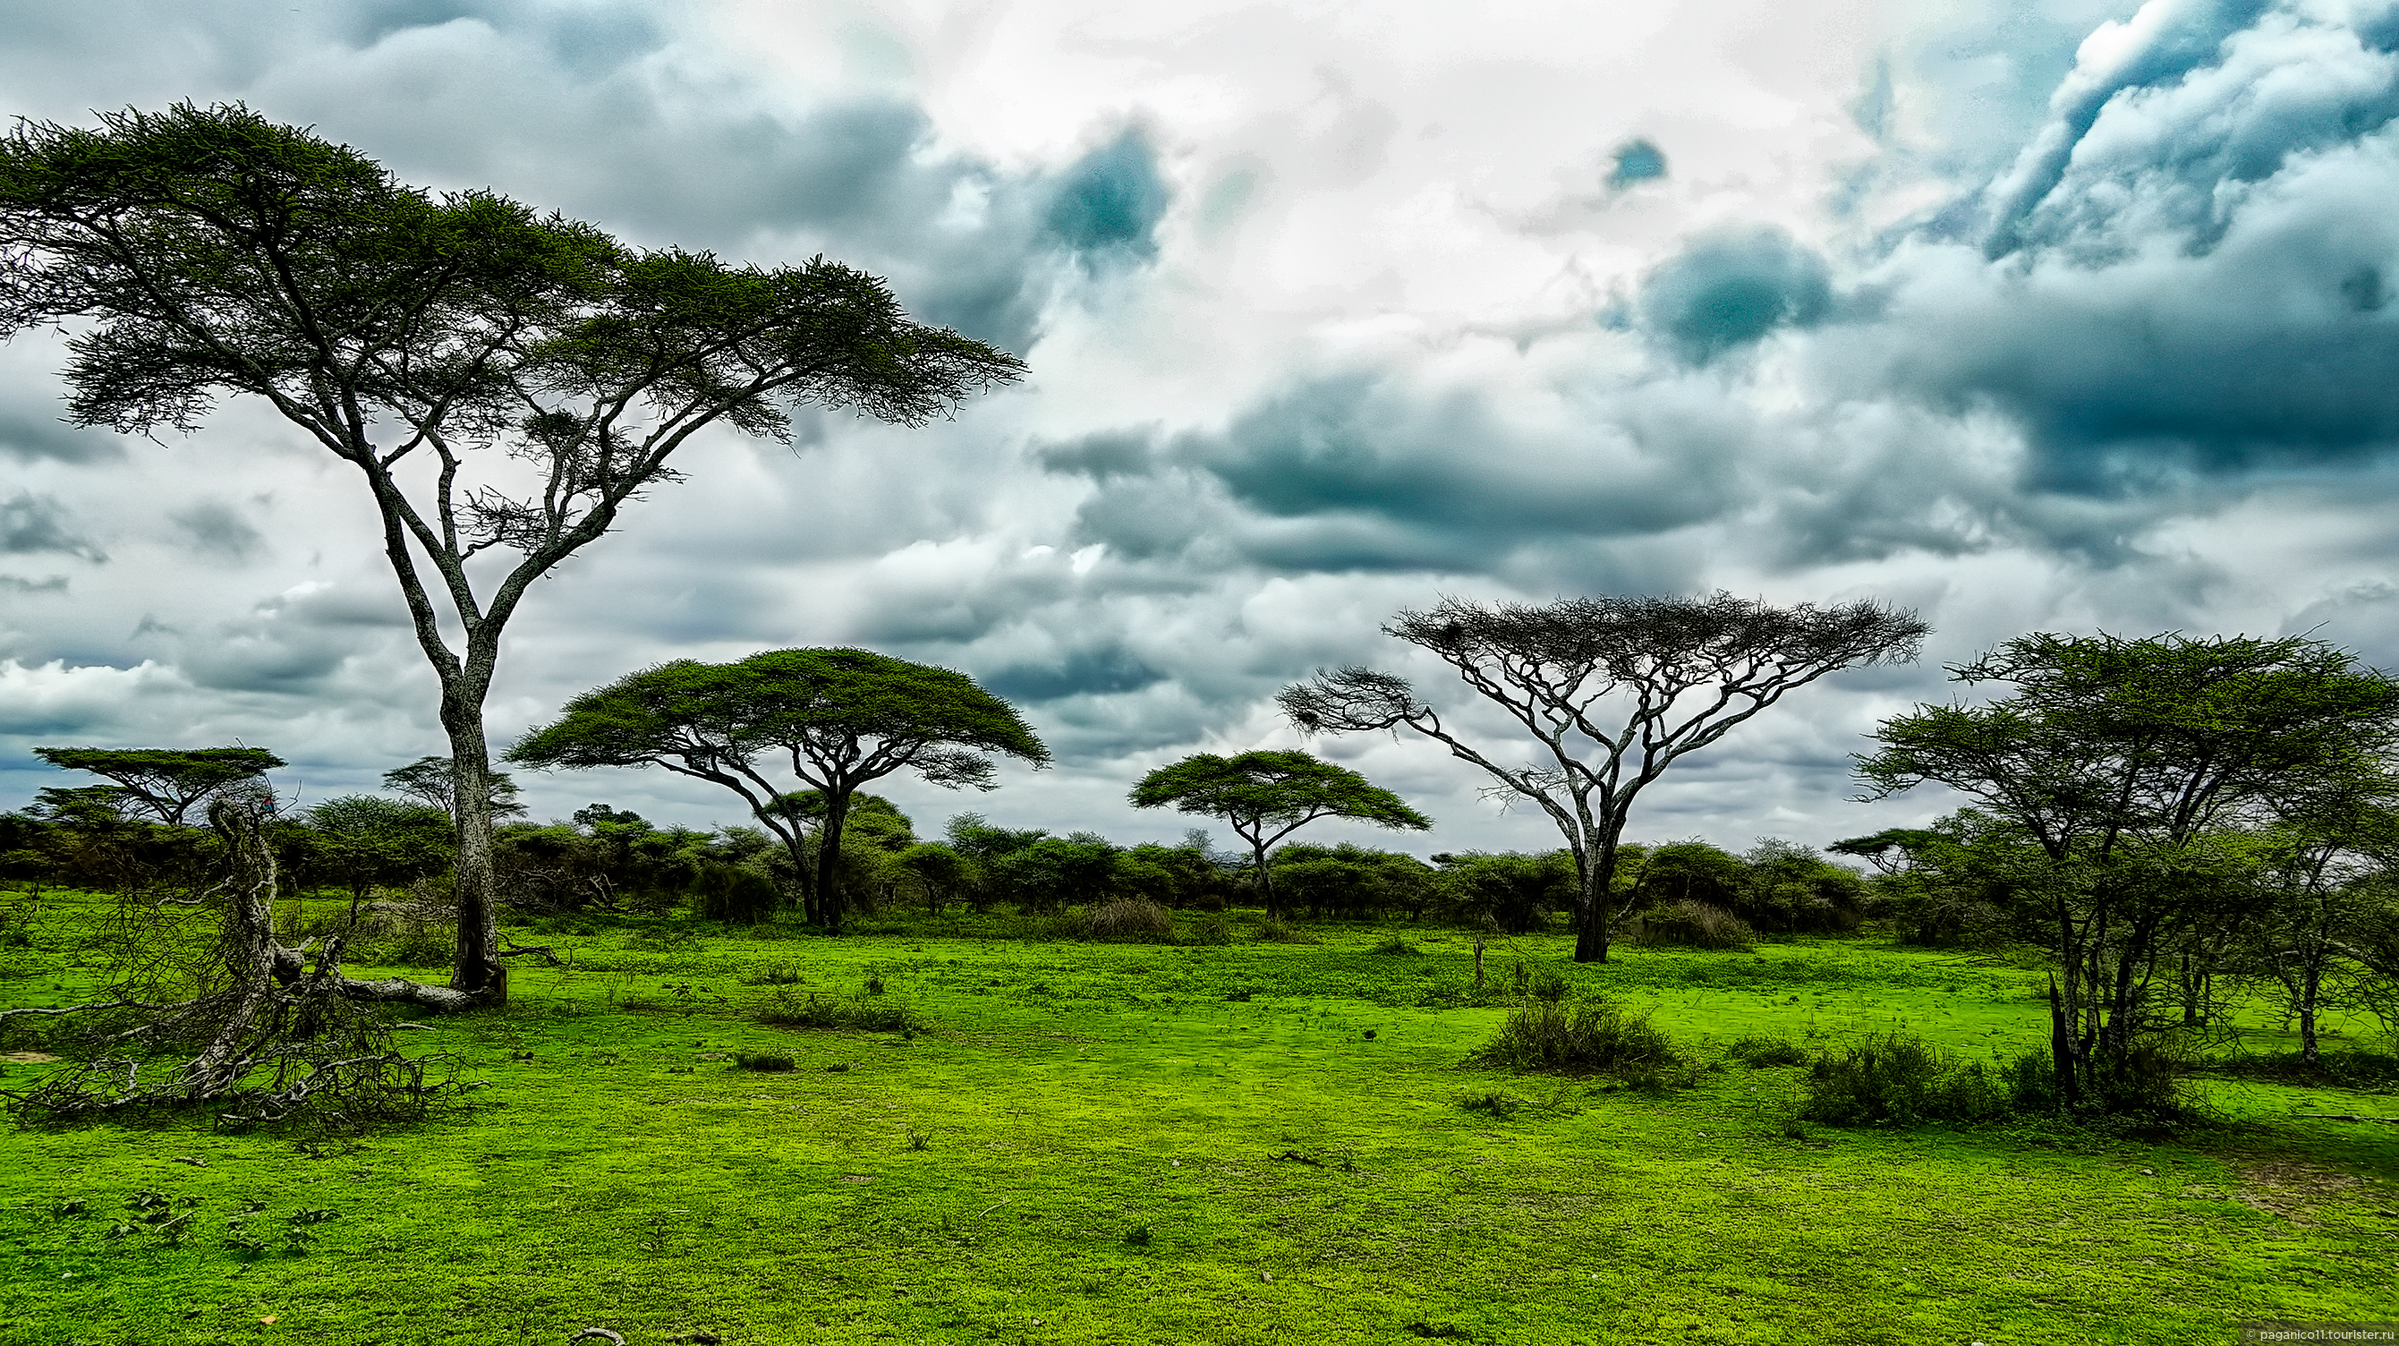 Редколесья в Танзании. Парк в Танзании. Национальный парк Джангл в Танзании. Танзания ландшафт. Саванны редколесья и кустарники северной америки